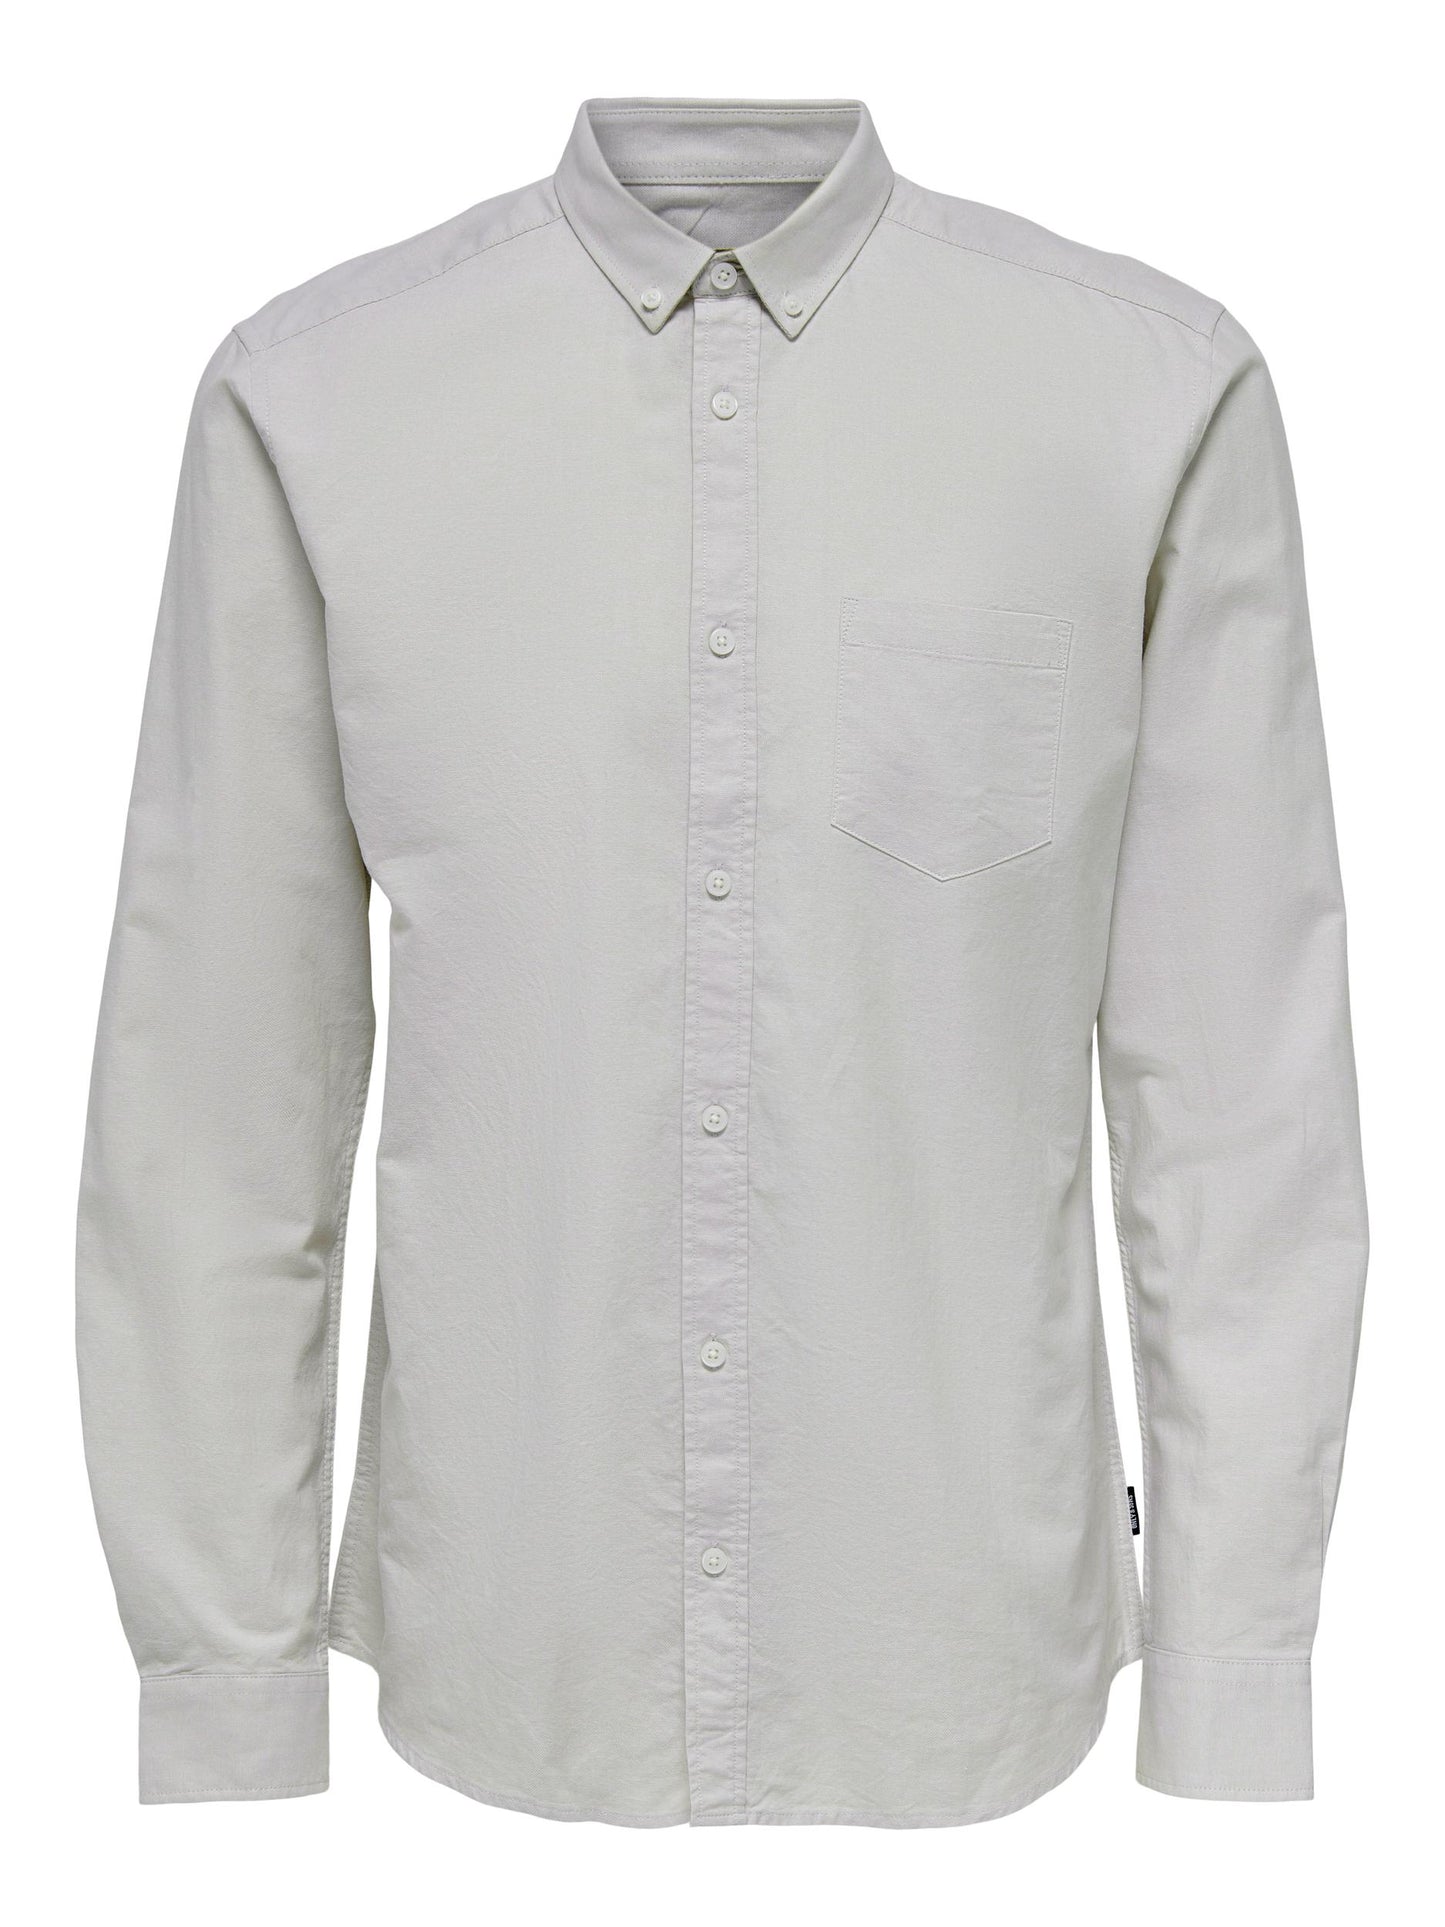 m tops - ONLY&SONS - Alvaro Oxford Shirt - PLENTY